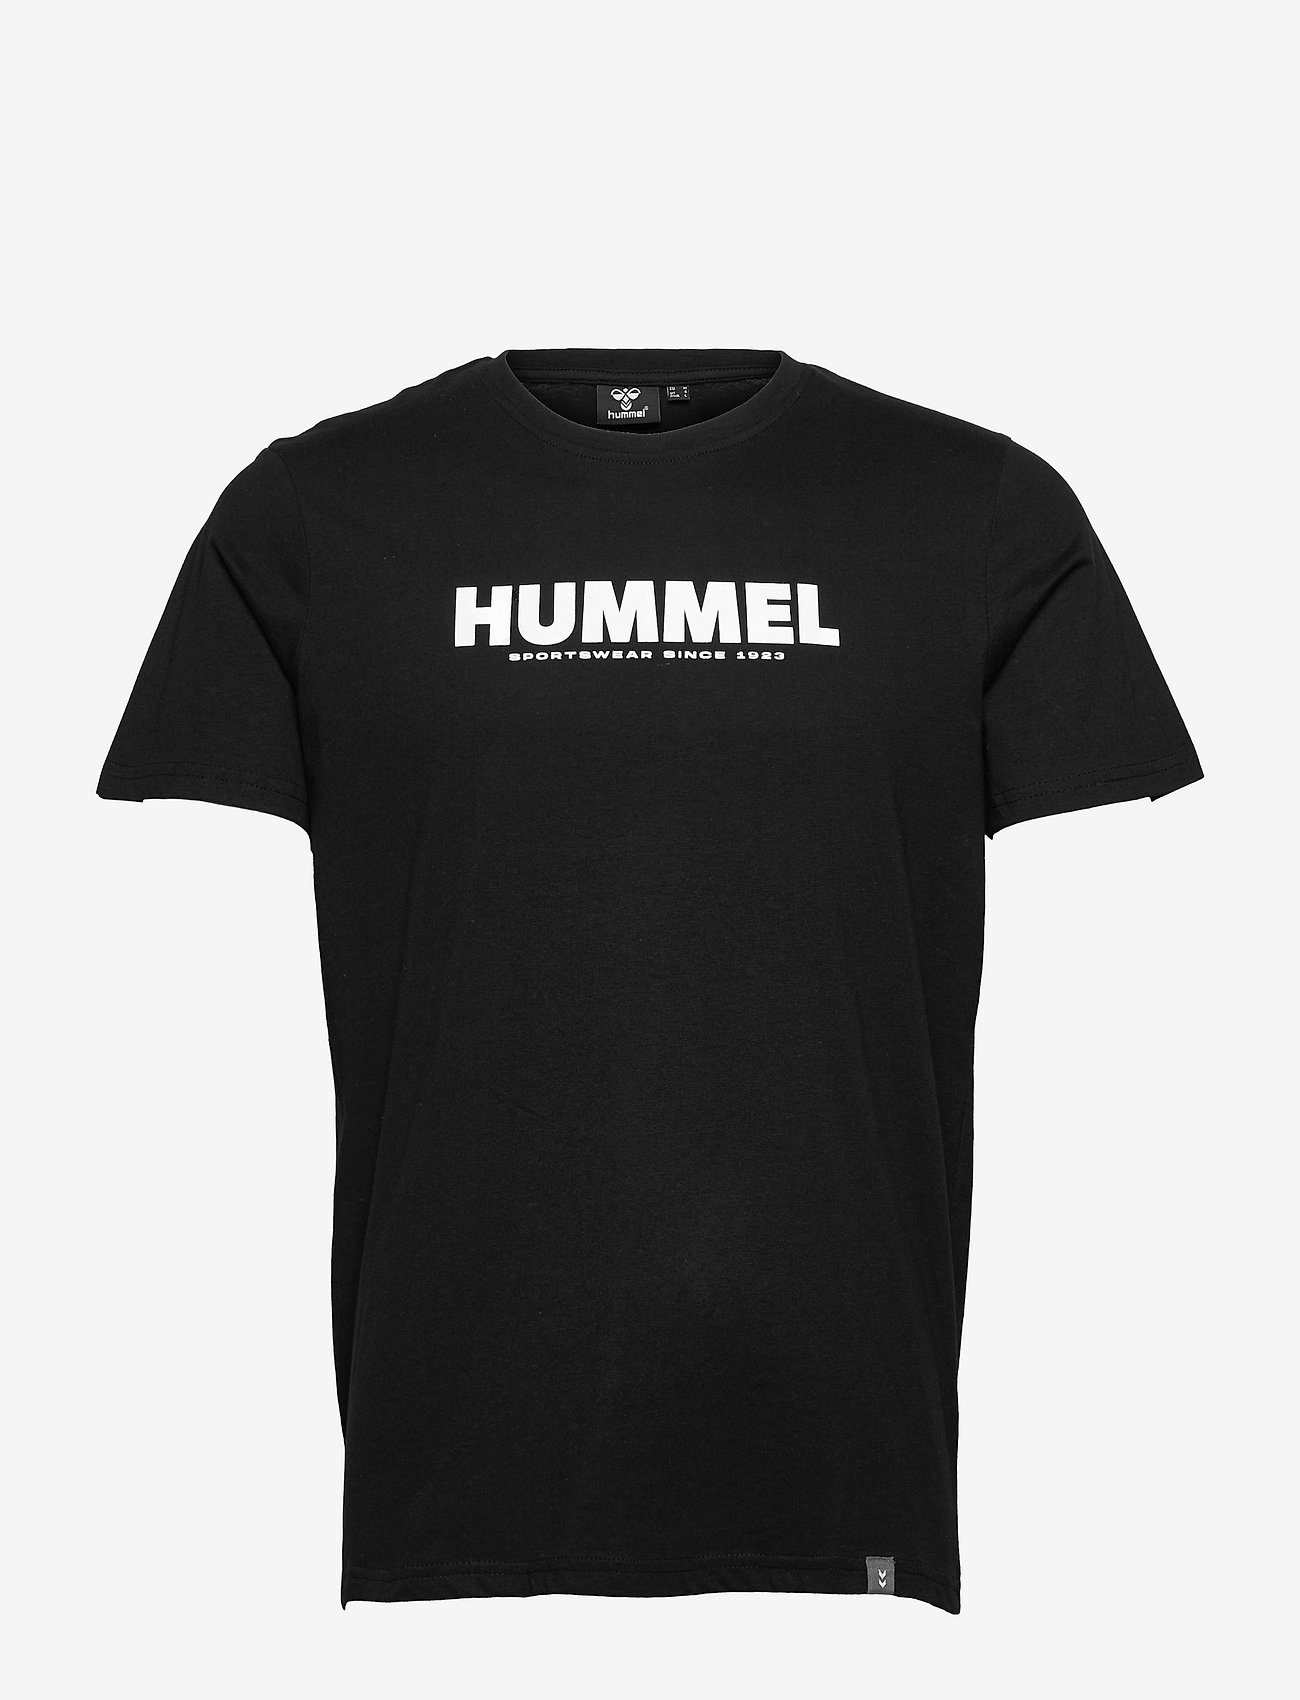 Hummel - hmlLEGACY T-SHIRT - laagste prijzen - black - 0